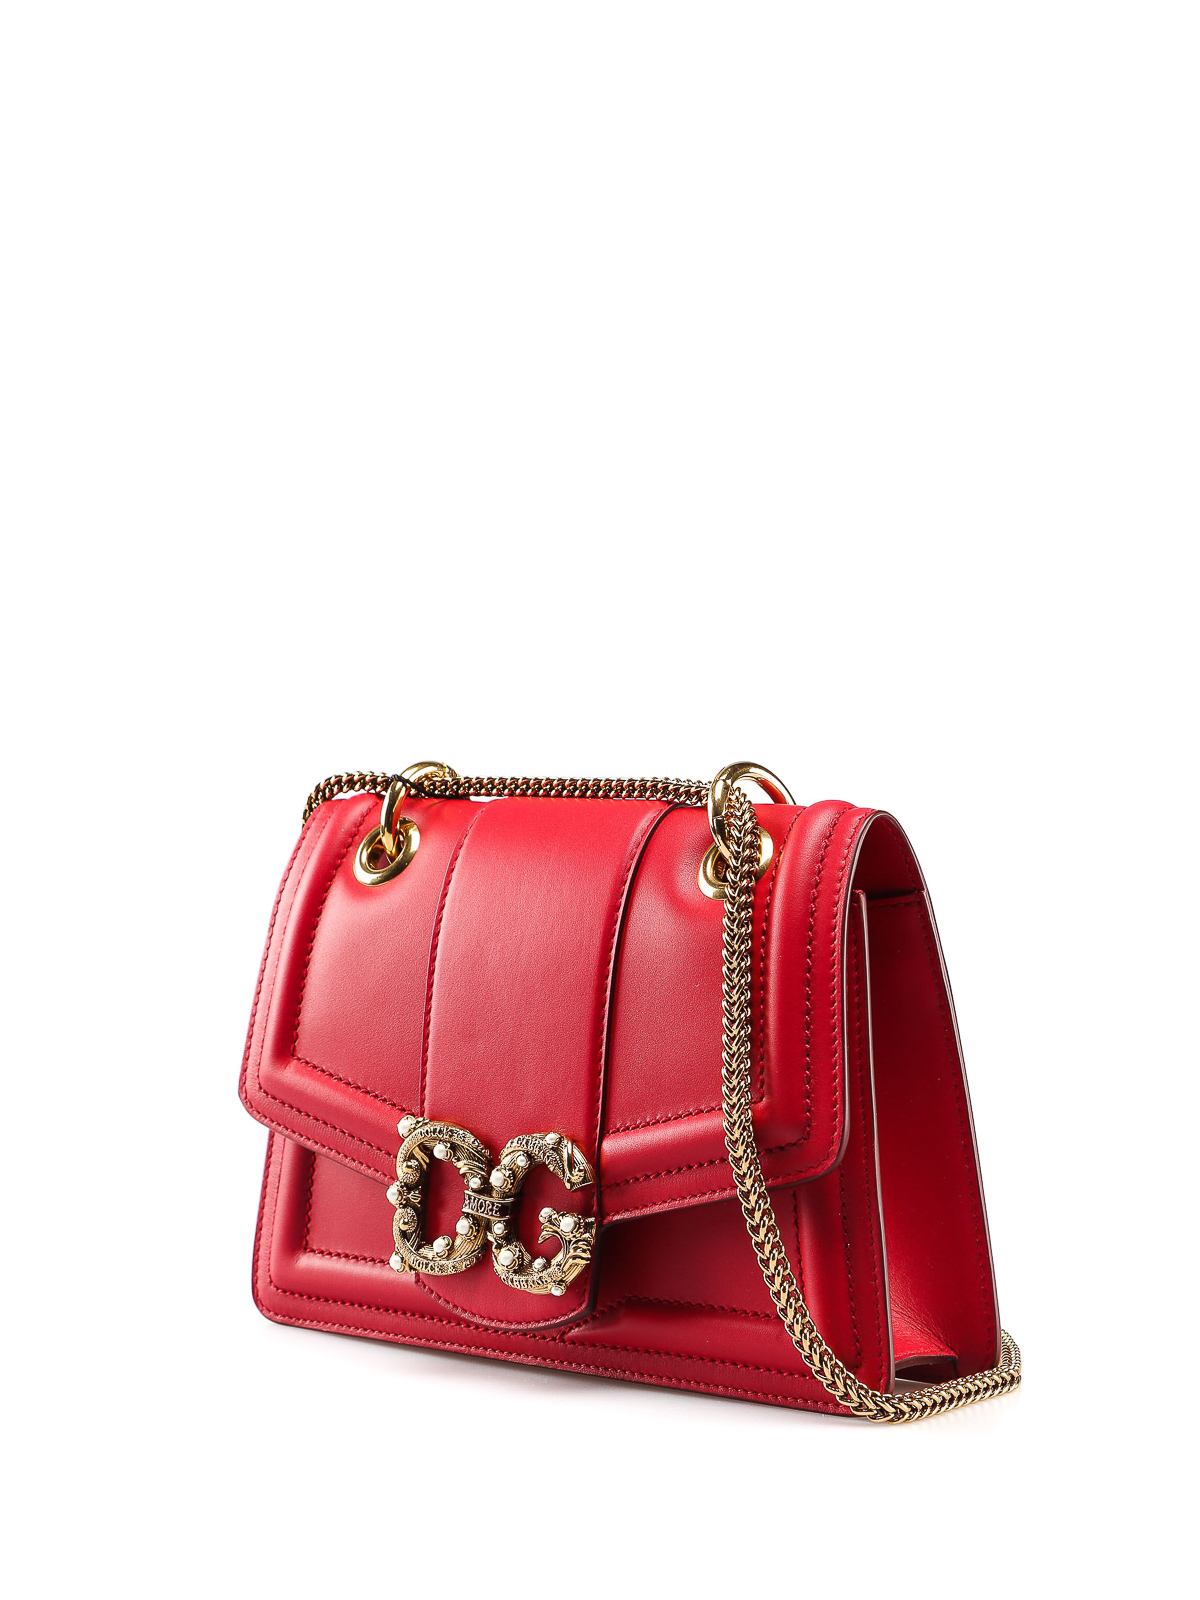 Shoulder bags Dolce & Gabbana - Amore red leather shoulder bag ...